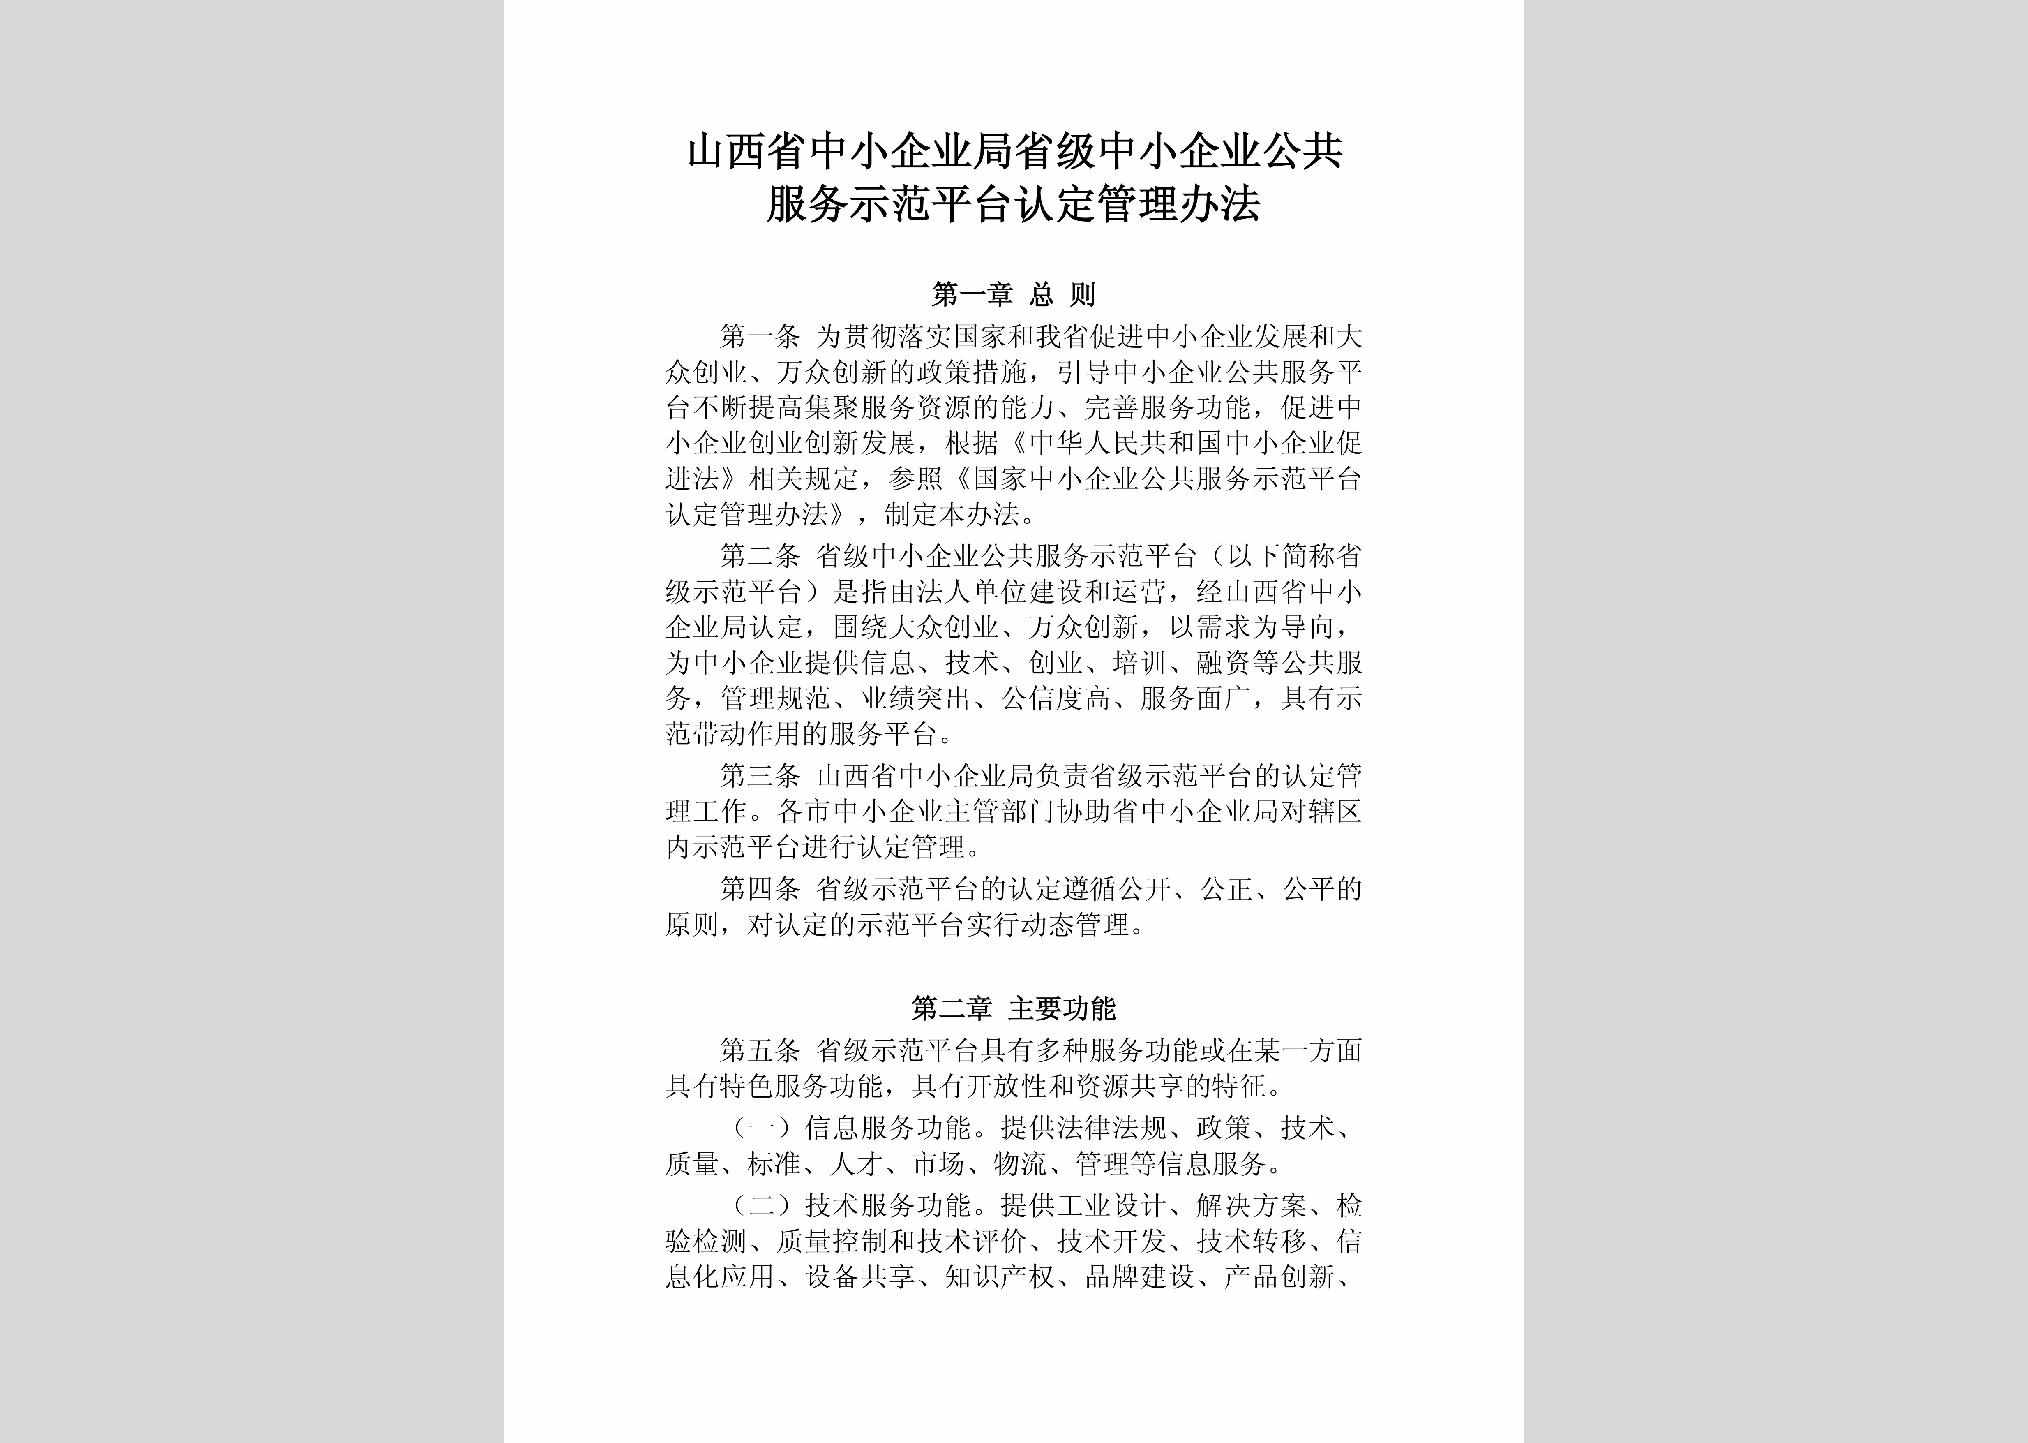 SX-ZXQYGGFW-2018：山西省中小企业局省级中小企业公共服务示范平台认定管理办法